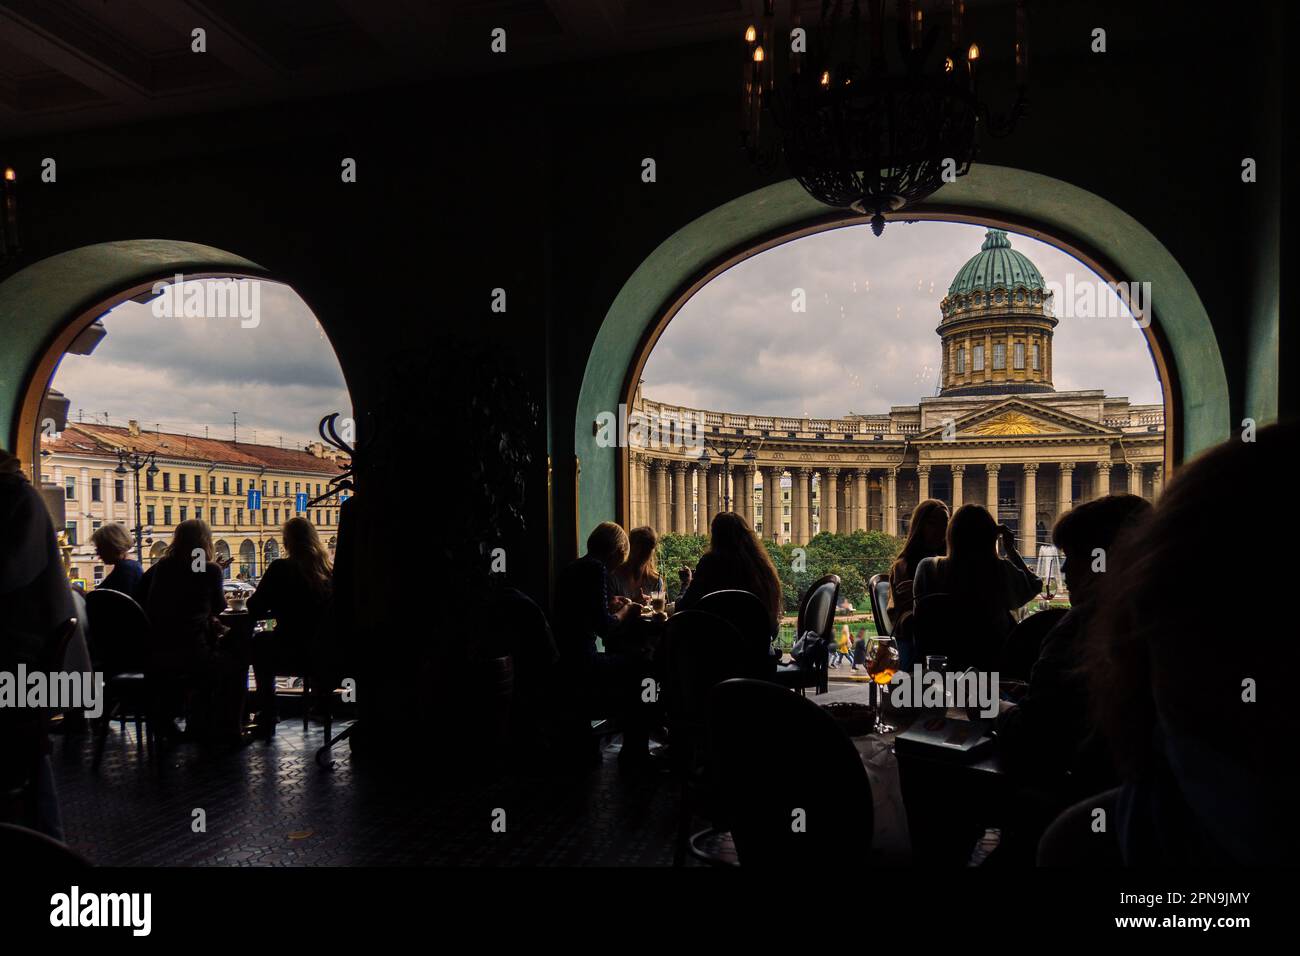 Vista della Cattedrale di Kazan dal Singer Cafe attraverso la finestra. Silhouette di persone sedute ai tavoli nella vecchia Singer House a San Pietroburgo, Russia. Foto di alta qualità Foto Stock